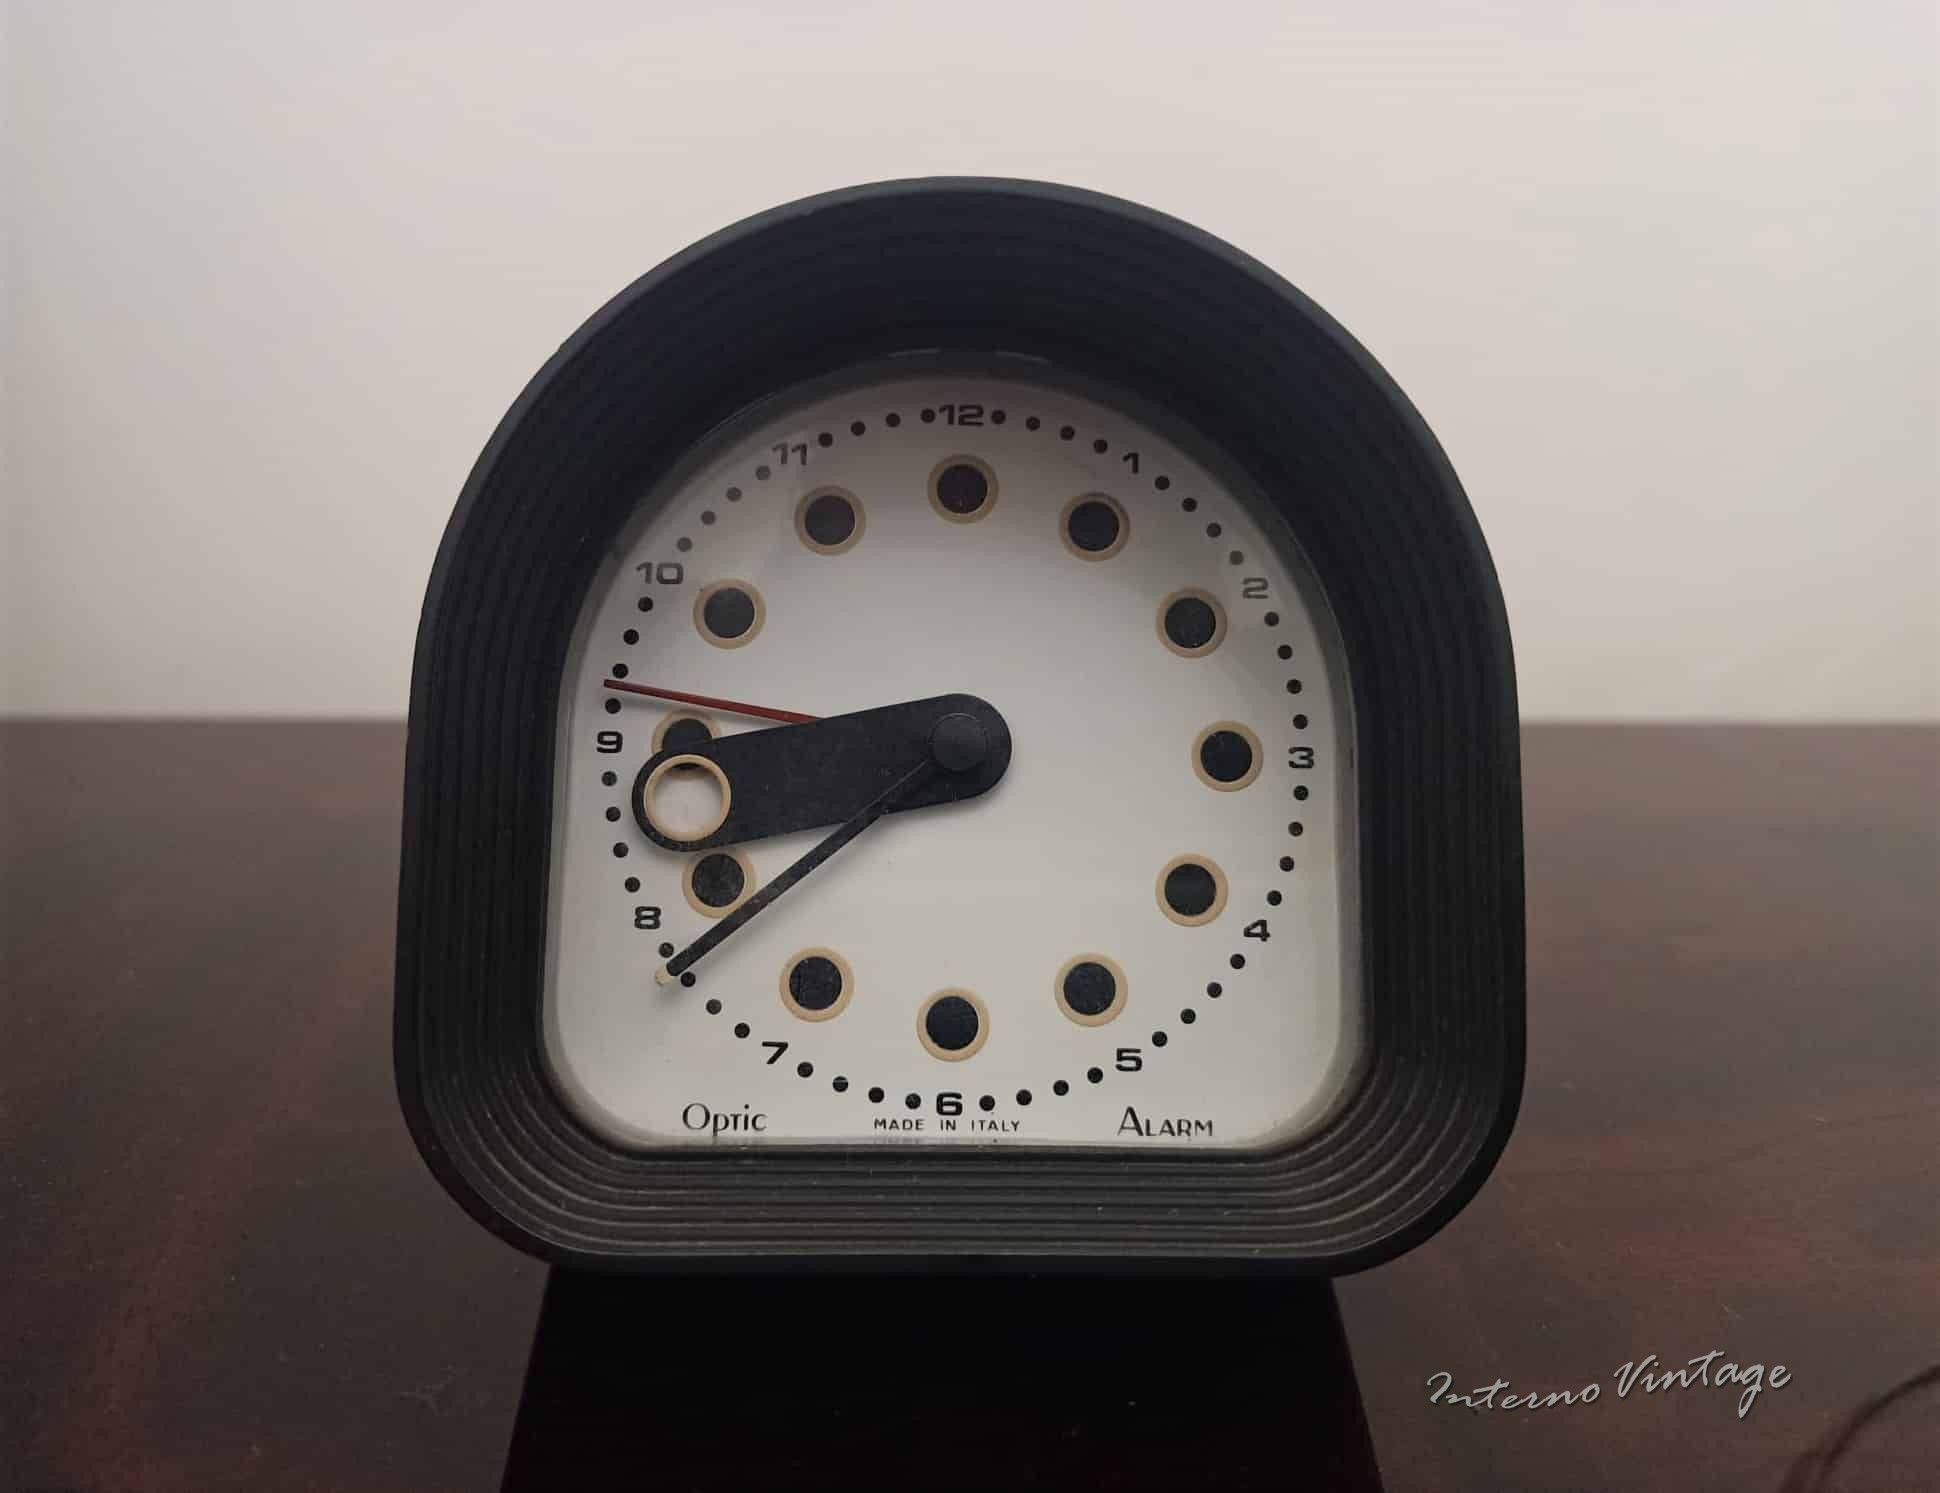 orologio "Optic" Ritz Italora design di Joe Colombo degli anni 60